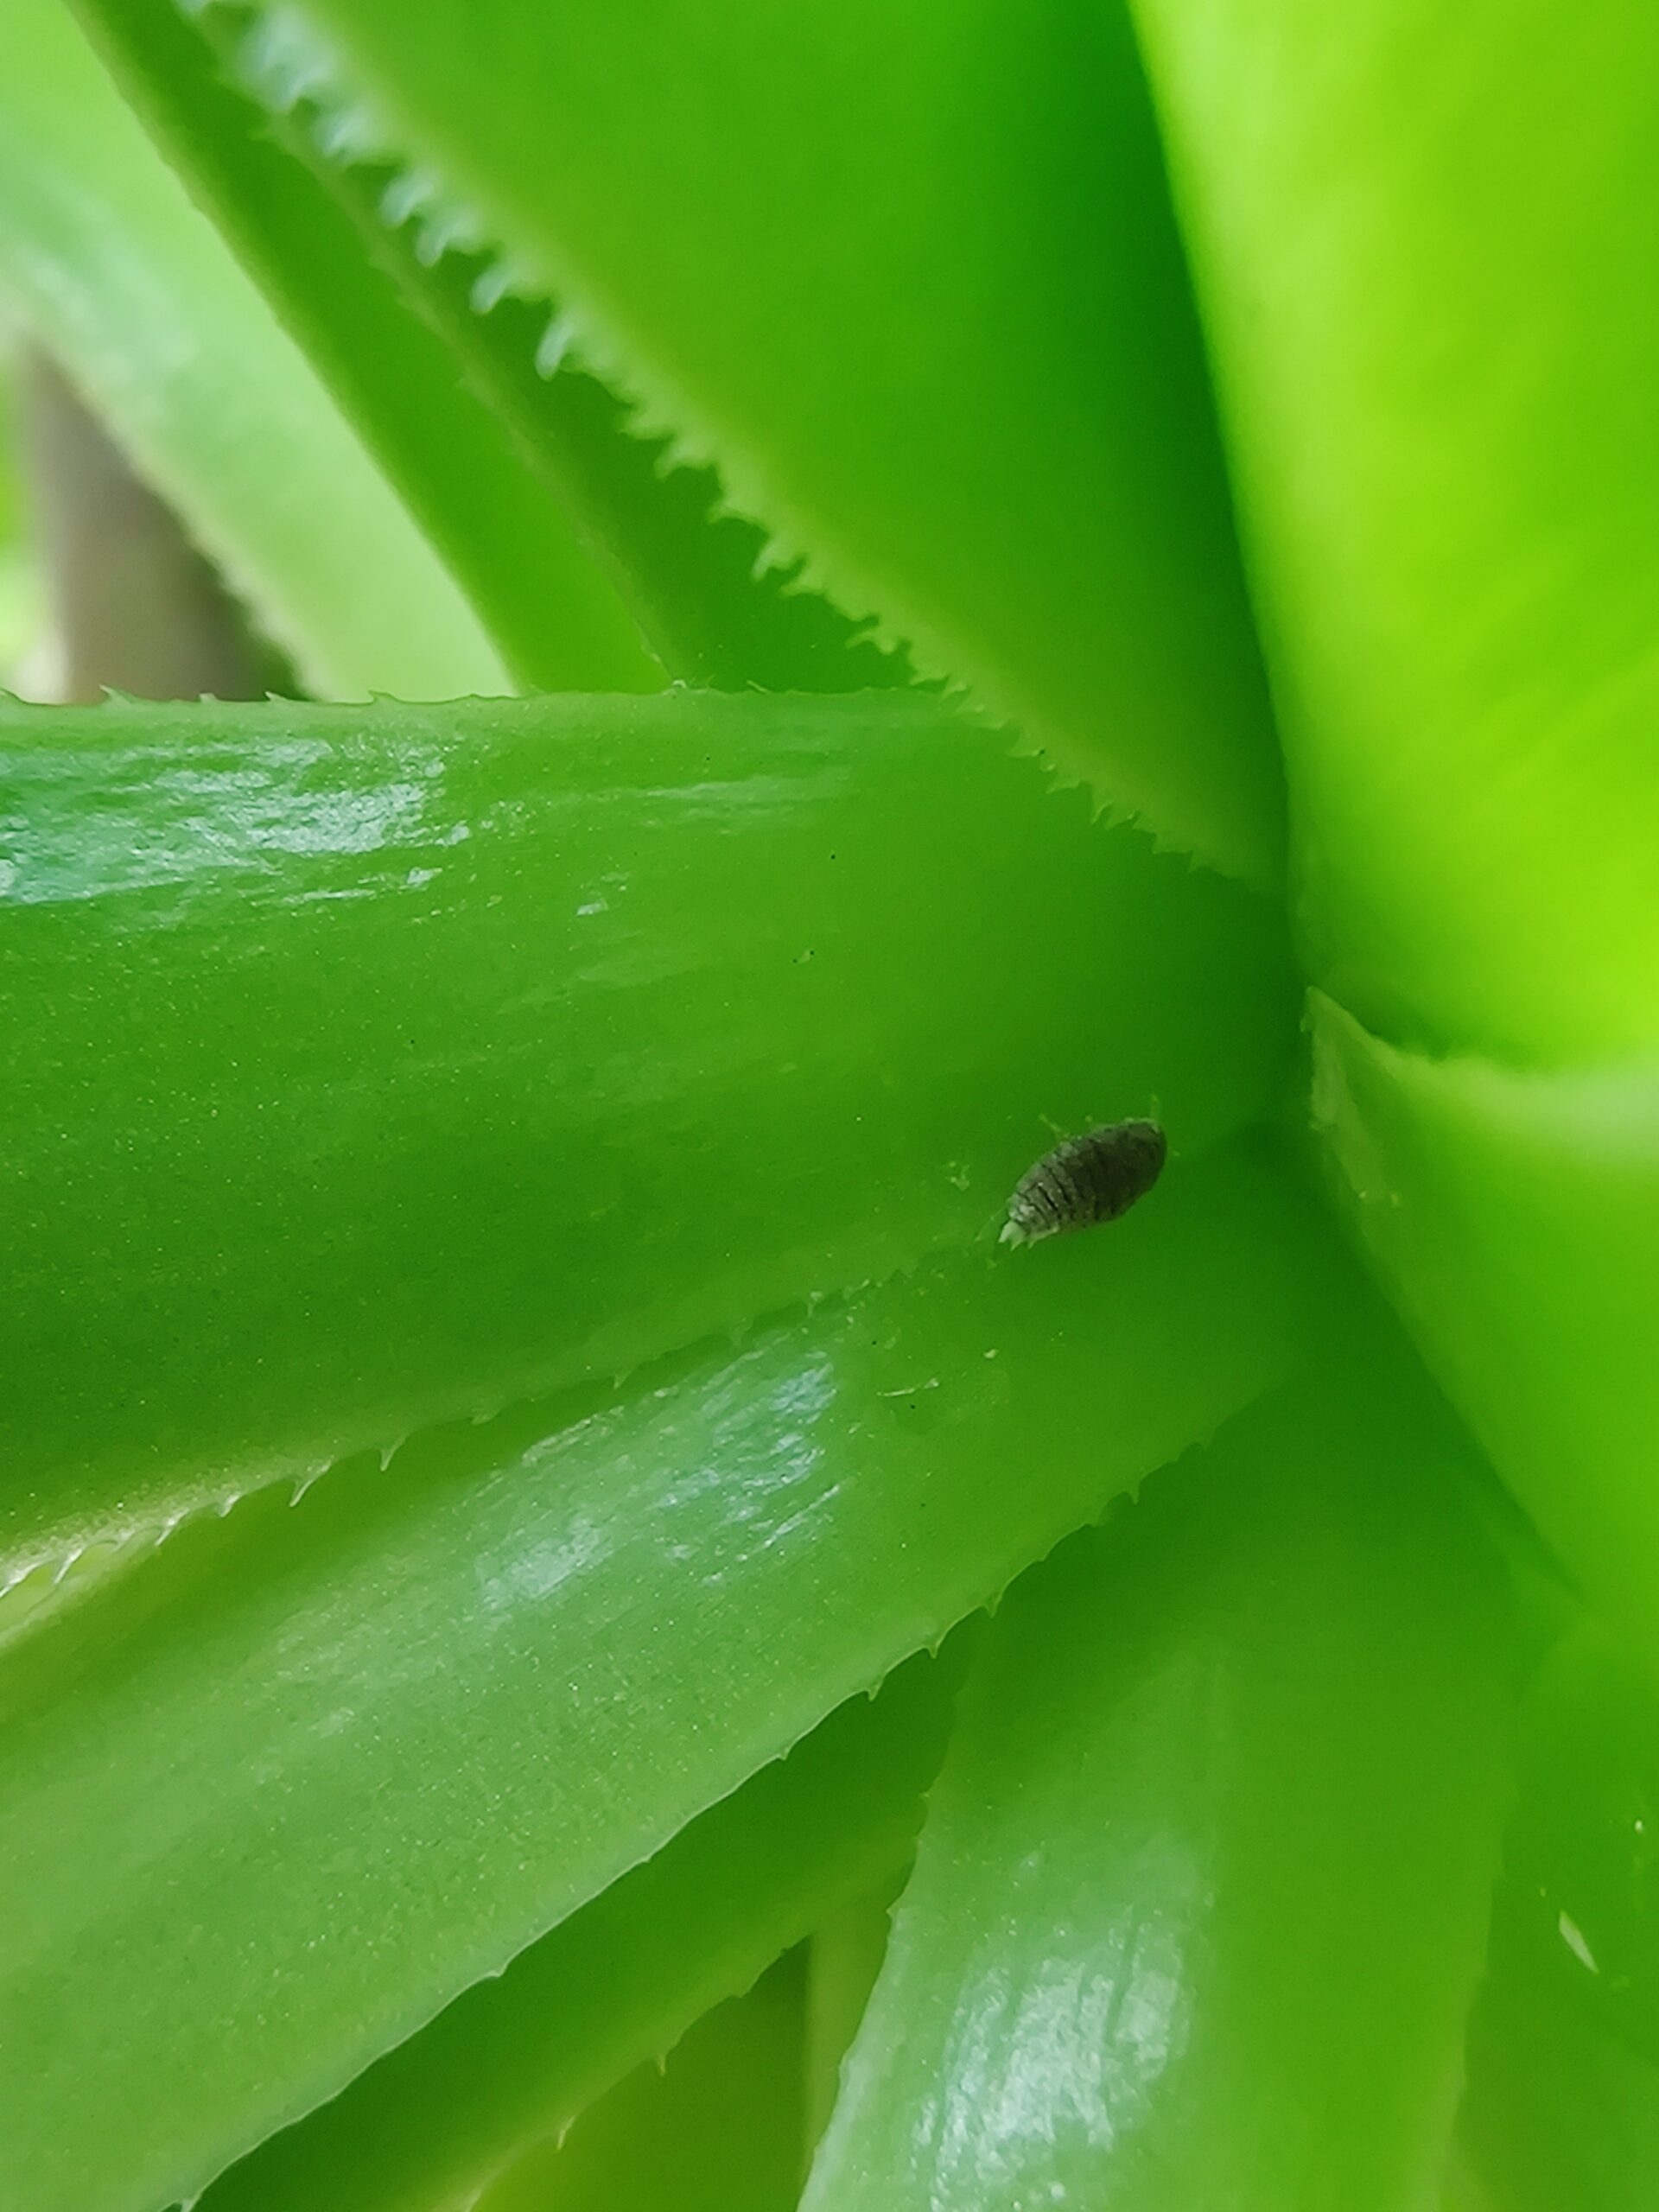 Mealybug on succulent leaf